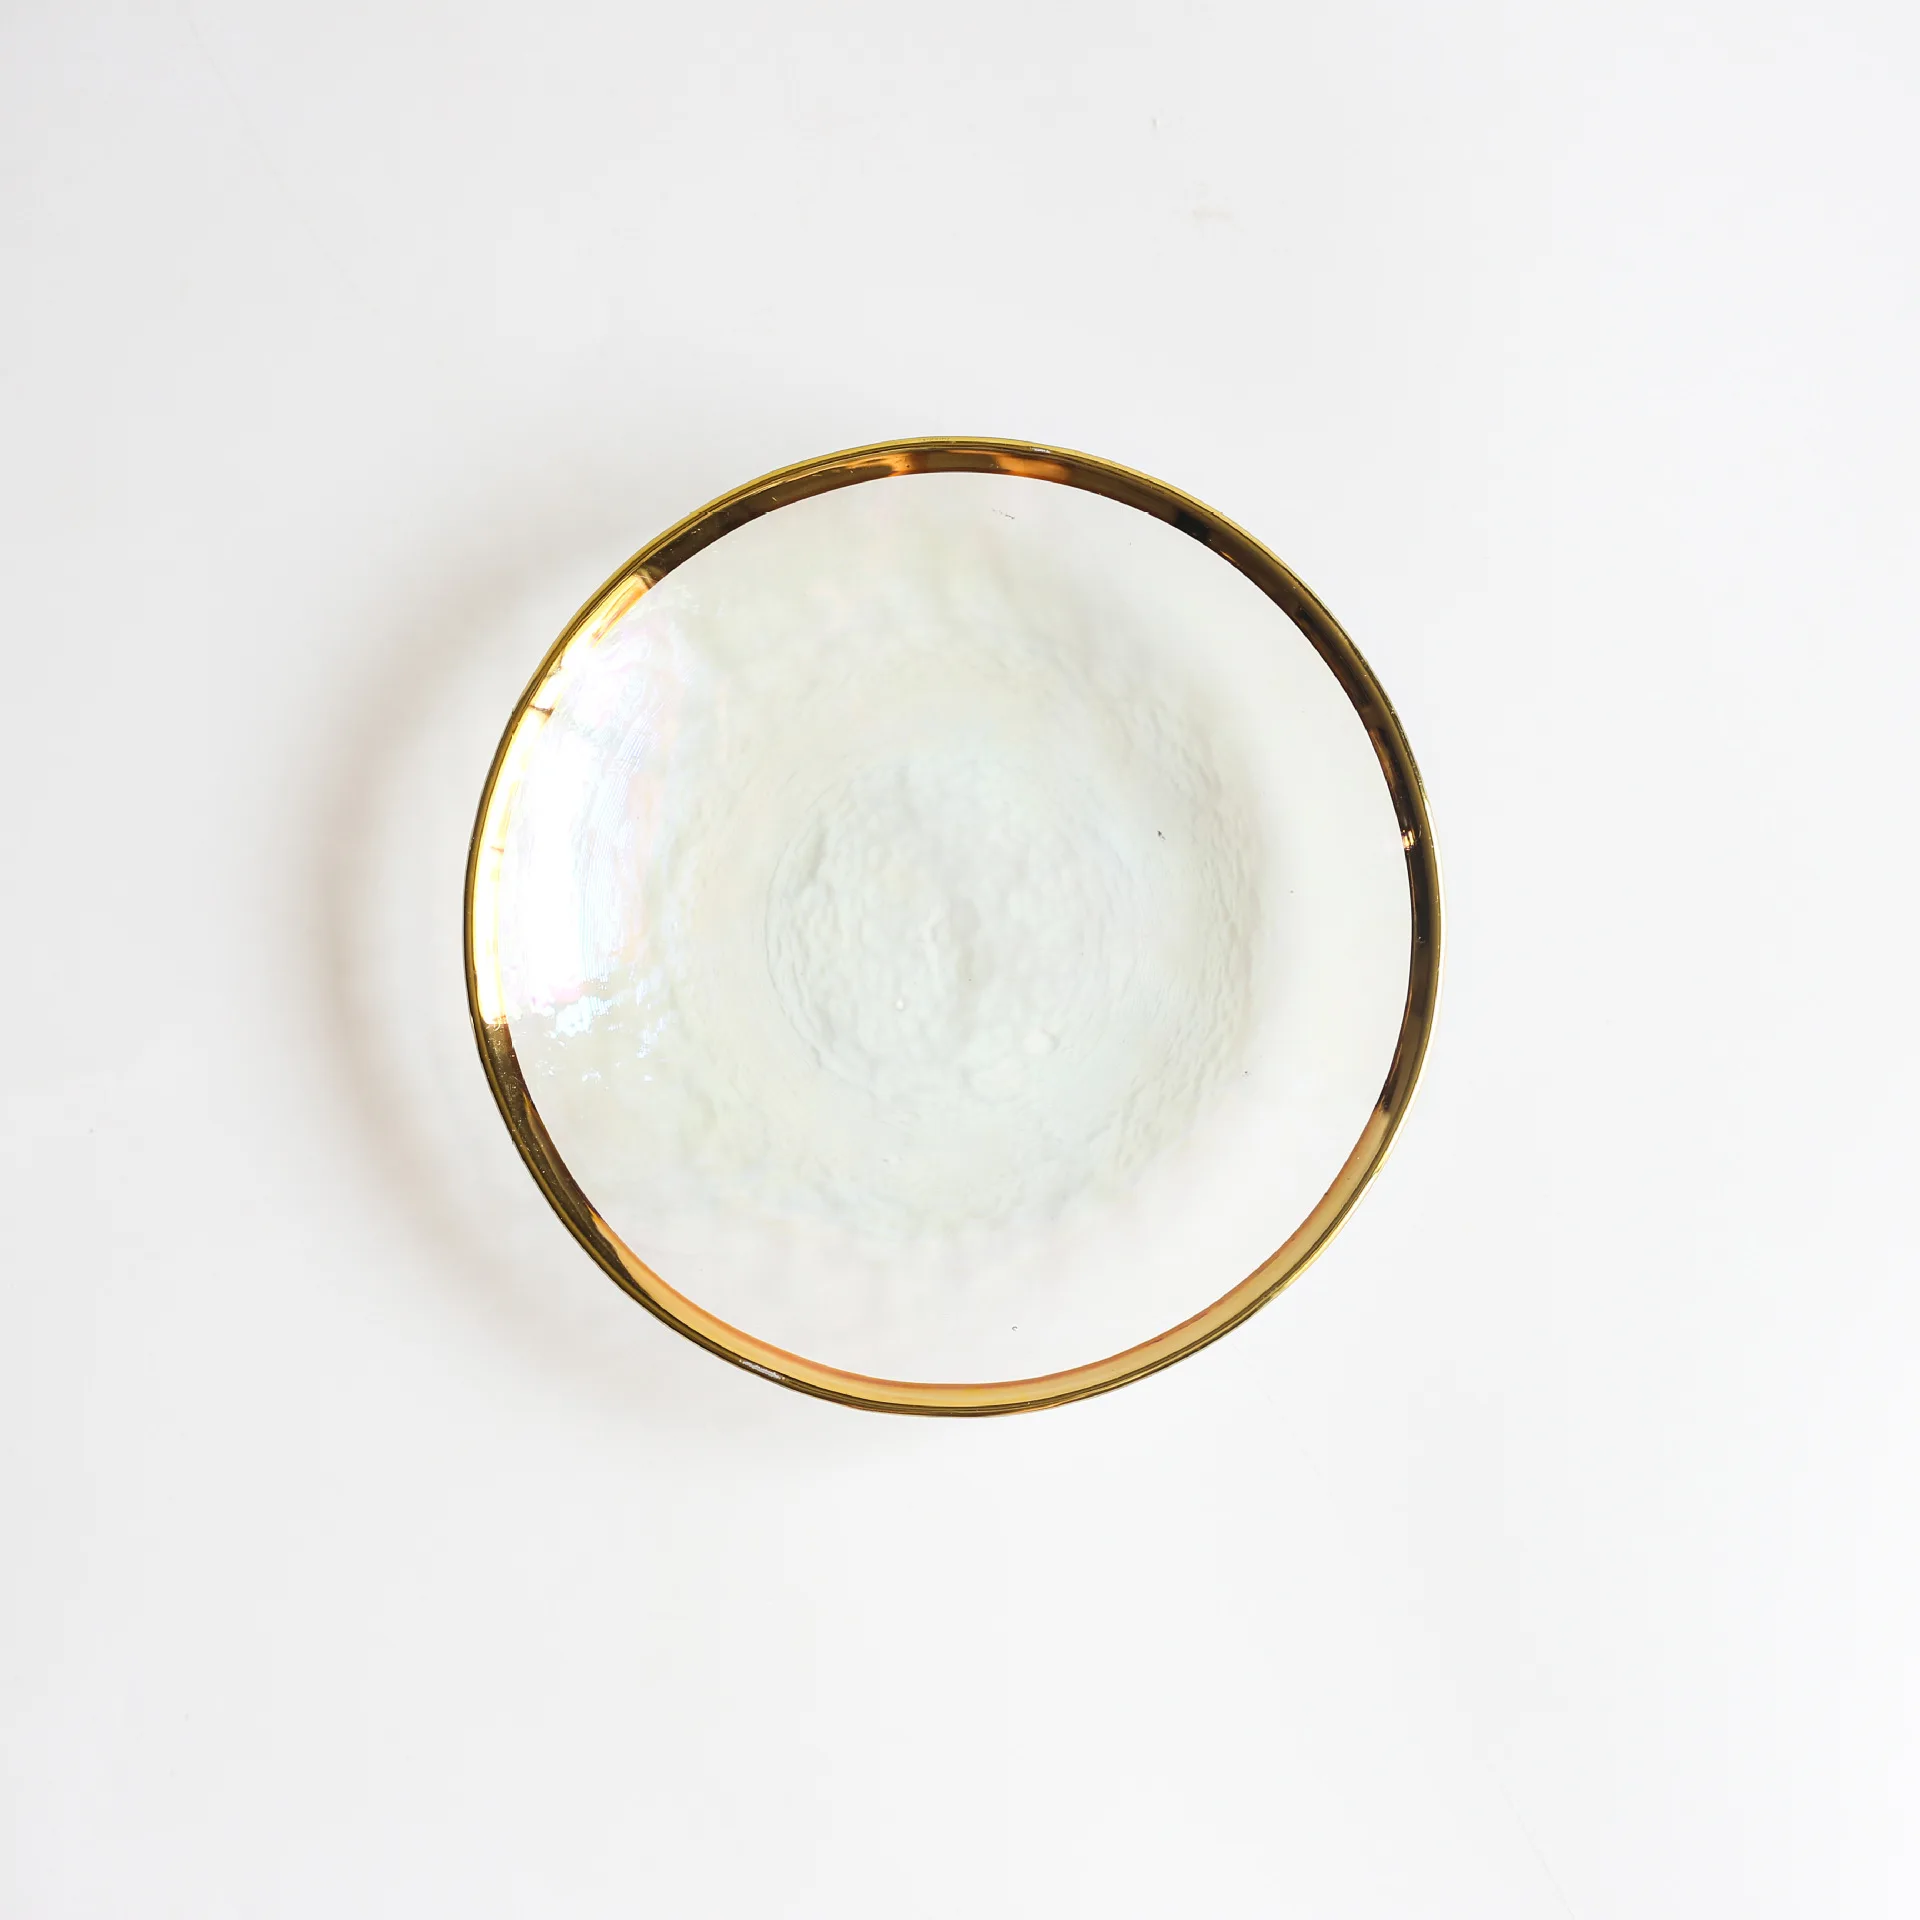 Восточная часть Эдема Ins тарелка красочная стеклянная посуда в золотистой оправе покрытая стеклянной тарелкой домашняя тарелка для стейка с десертной тарелкой Прямая поставка - Цвет: 15